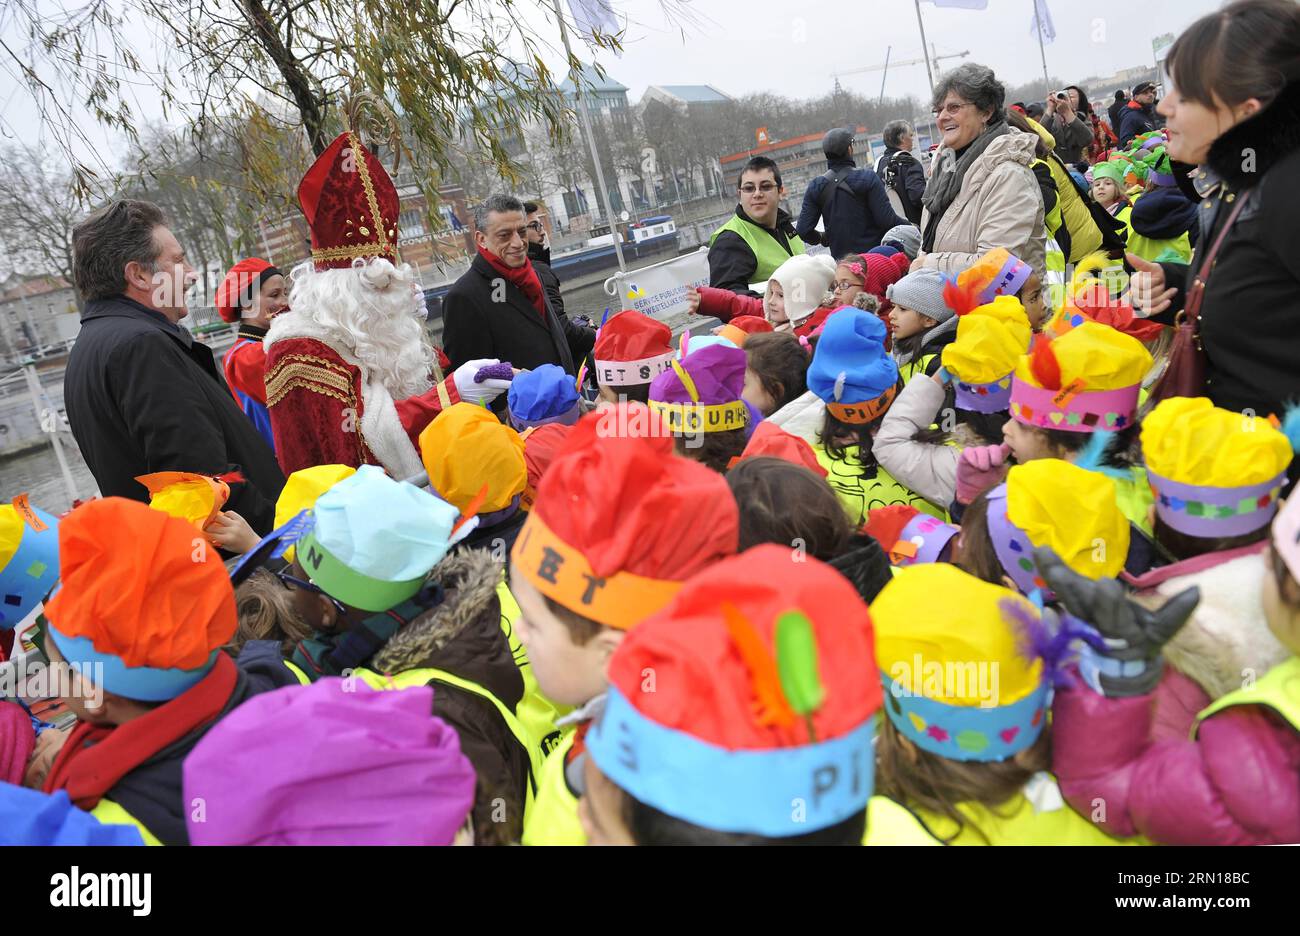 (141205) -- BRÜSSEL, 5. Dezember 2014 -- Kinder begrüßen die Ankunft von Saint-Nicolas (Sinterklaas) und seinen Helfern in Brüssel, 5. Dezember 2014. Saint-Nicolas, der eine der Quellen der beliebten Weihnachtsfigur des Weihnachtsmanns ist, wird jährlich mit Geschenken in der Nacht vor oder am Heiligen Nikolaus-Tag am 6. Dezember in Belgien gefeiert. ) BELGIEN-BRÜSSEL-SAINT NICOLAS YexPingfan PUBLICATIONxNOTxINxCHN Brüssel DEZ 5 2014 Kinder Willkommen die Ankünfte des Heiligen Nicolas und seiner Helfer IN Brüssel der Belgischen DEZ 5 2014 Saint Nicolas, der eine der Quellen der IST Stockfoto